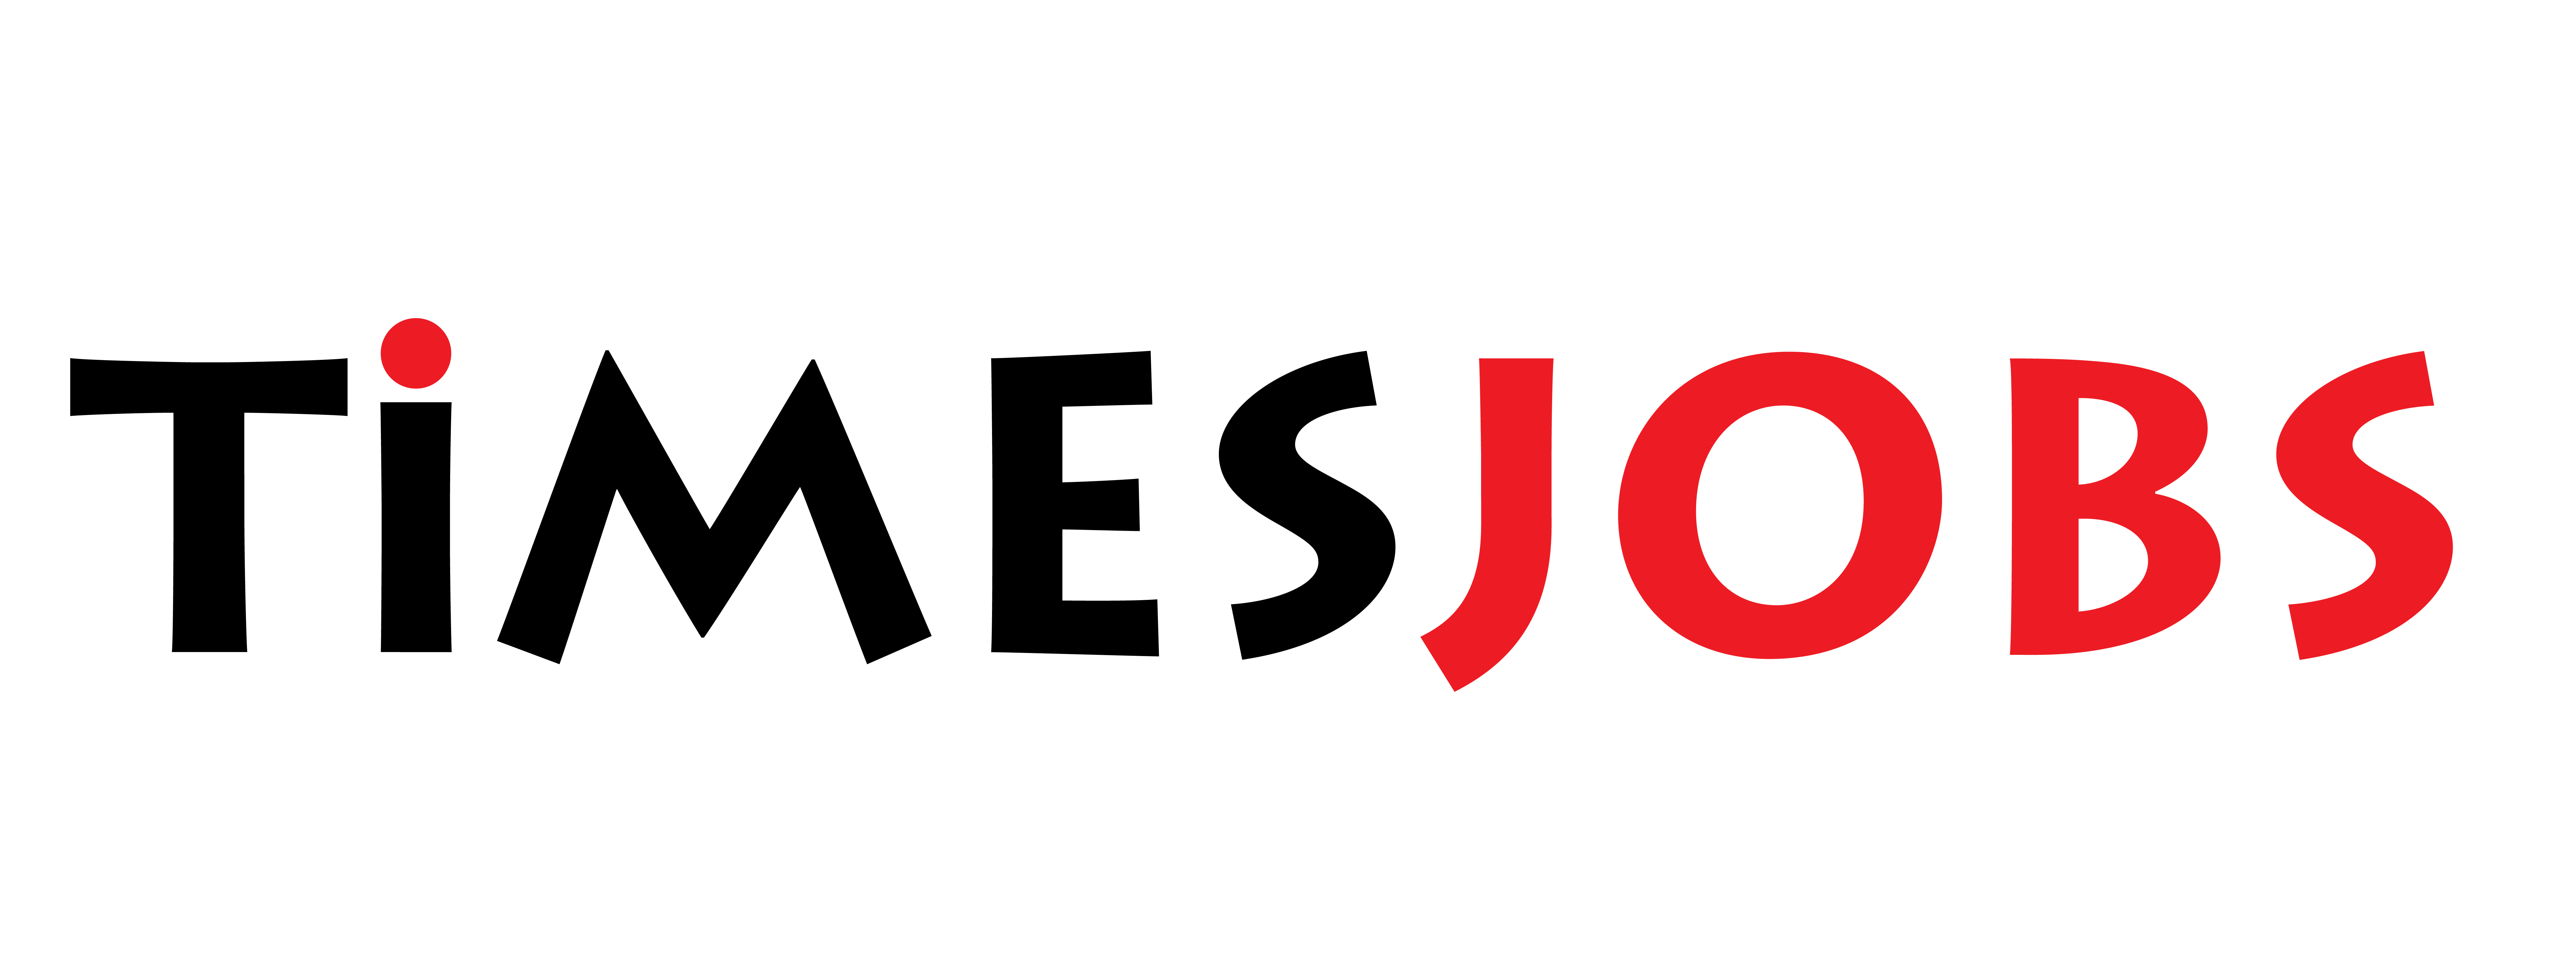 Job Finder Logo Vector - (.Ai .PNG .SVG .EPS Free Download)